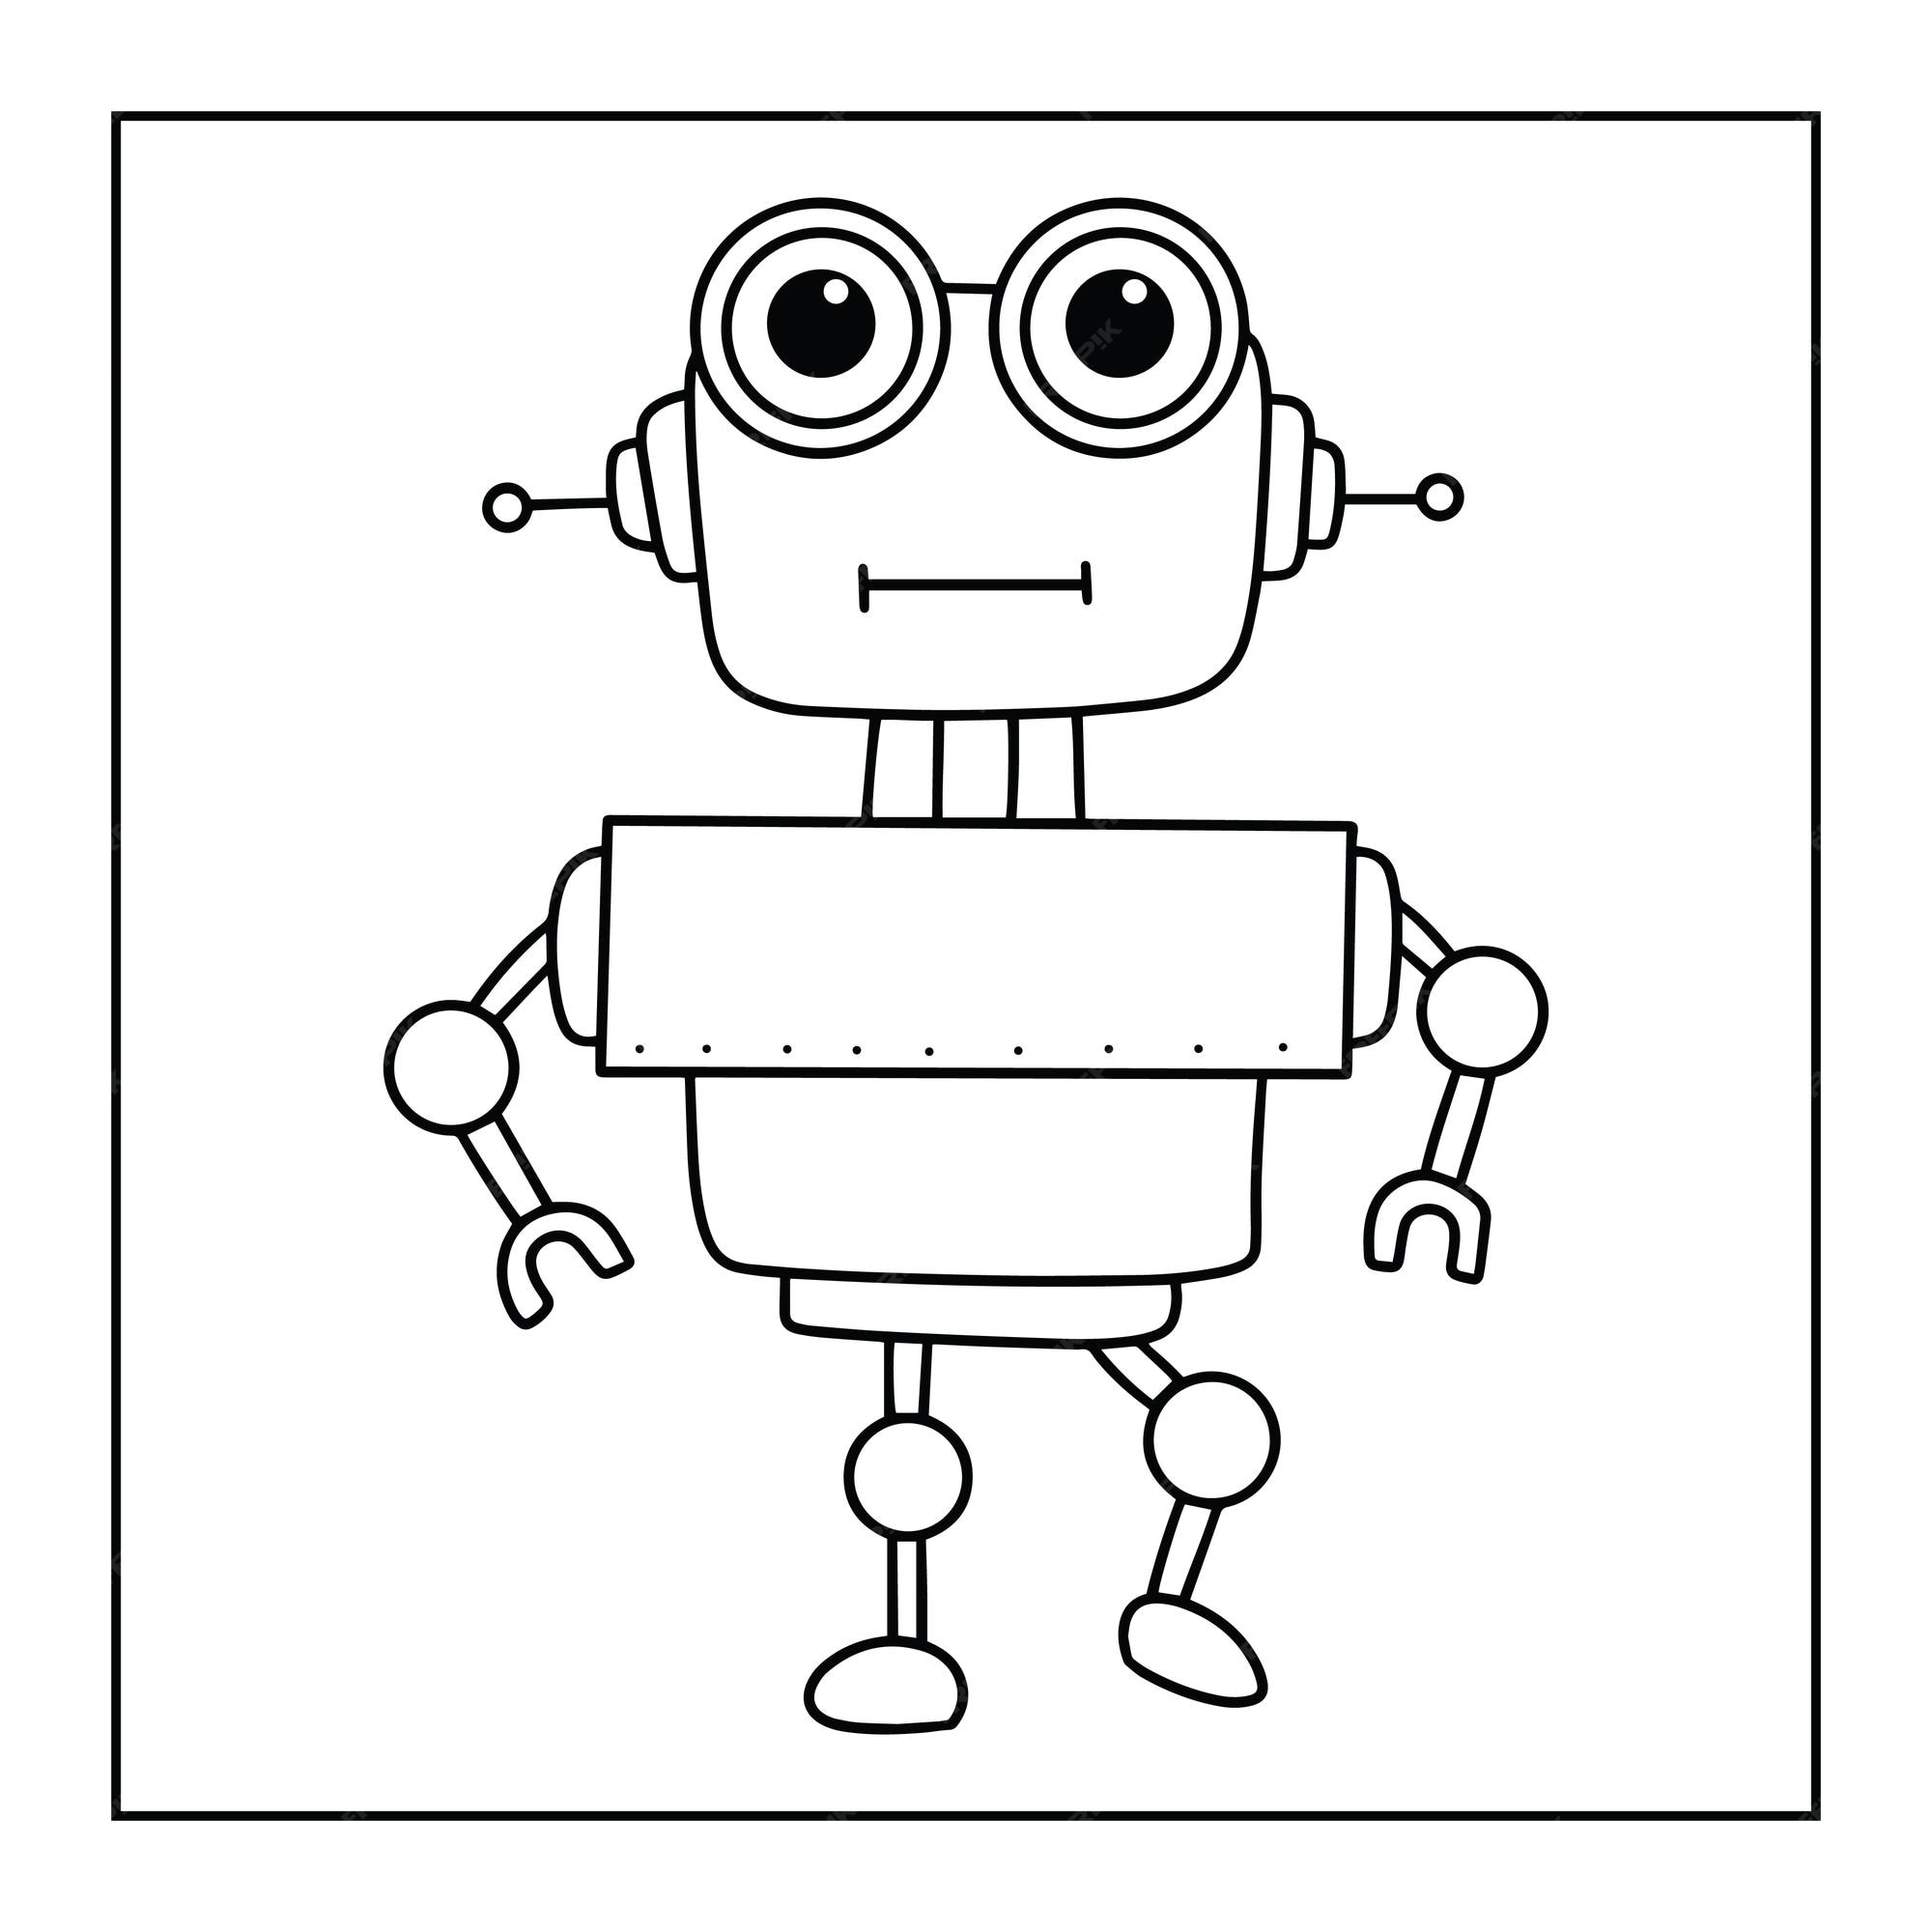 indarbejde Grønland møde Premium Vector | Cute printable robot coloring pages for kids